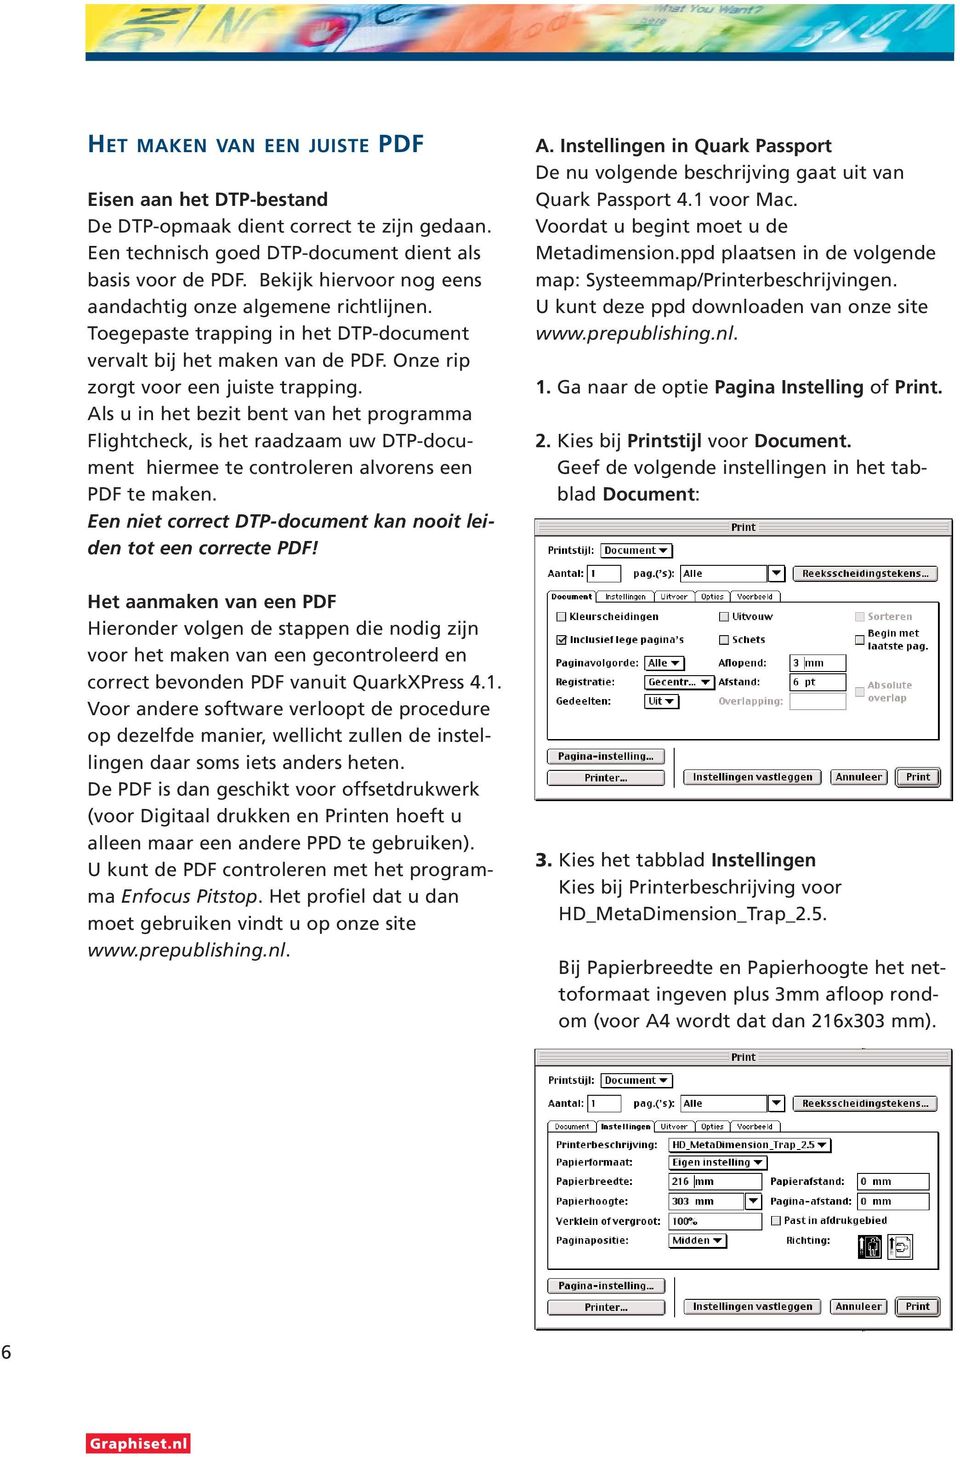 Als u in het bezit bent van het programma Flightcheck, is het raadzaam uw DTP-document hiermee te controleren alvorens een PDF te maken.